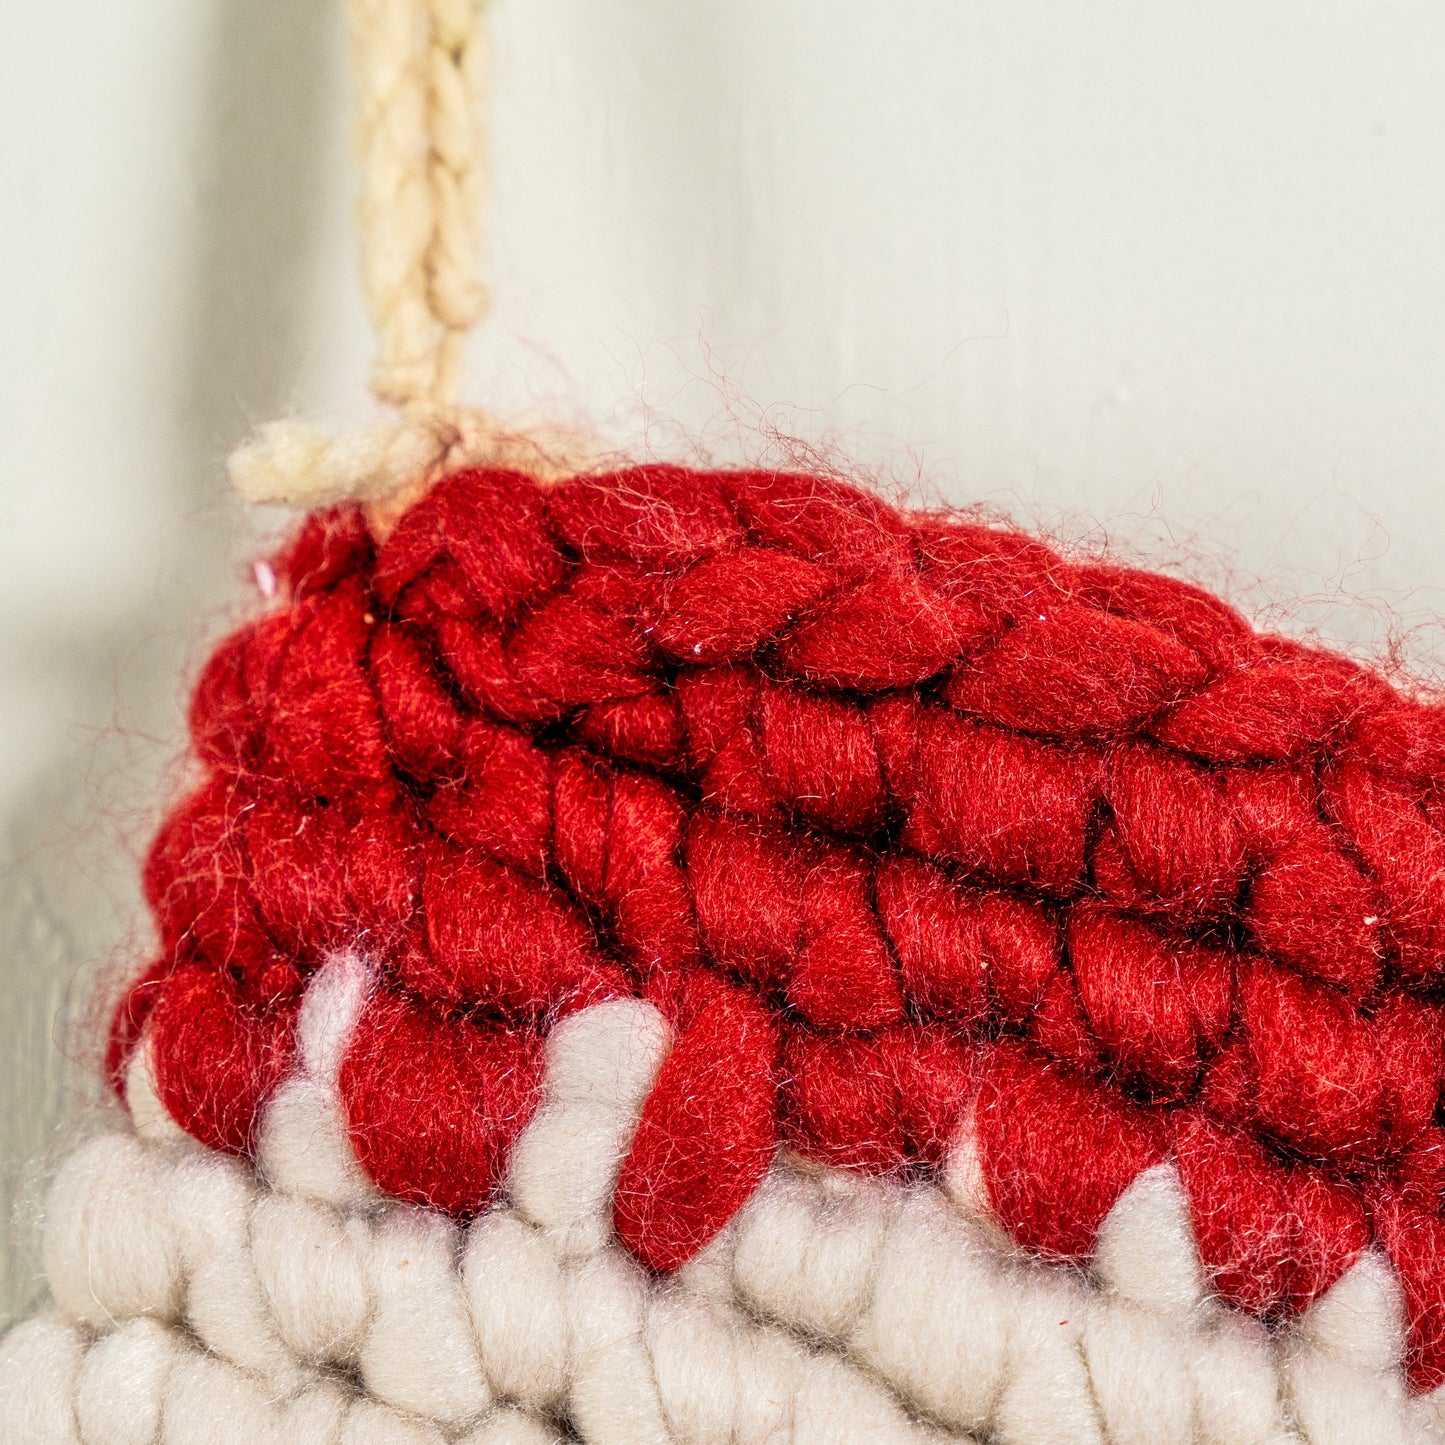 Cream & Red Crocheted Stocking